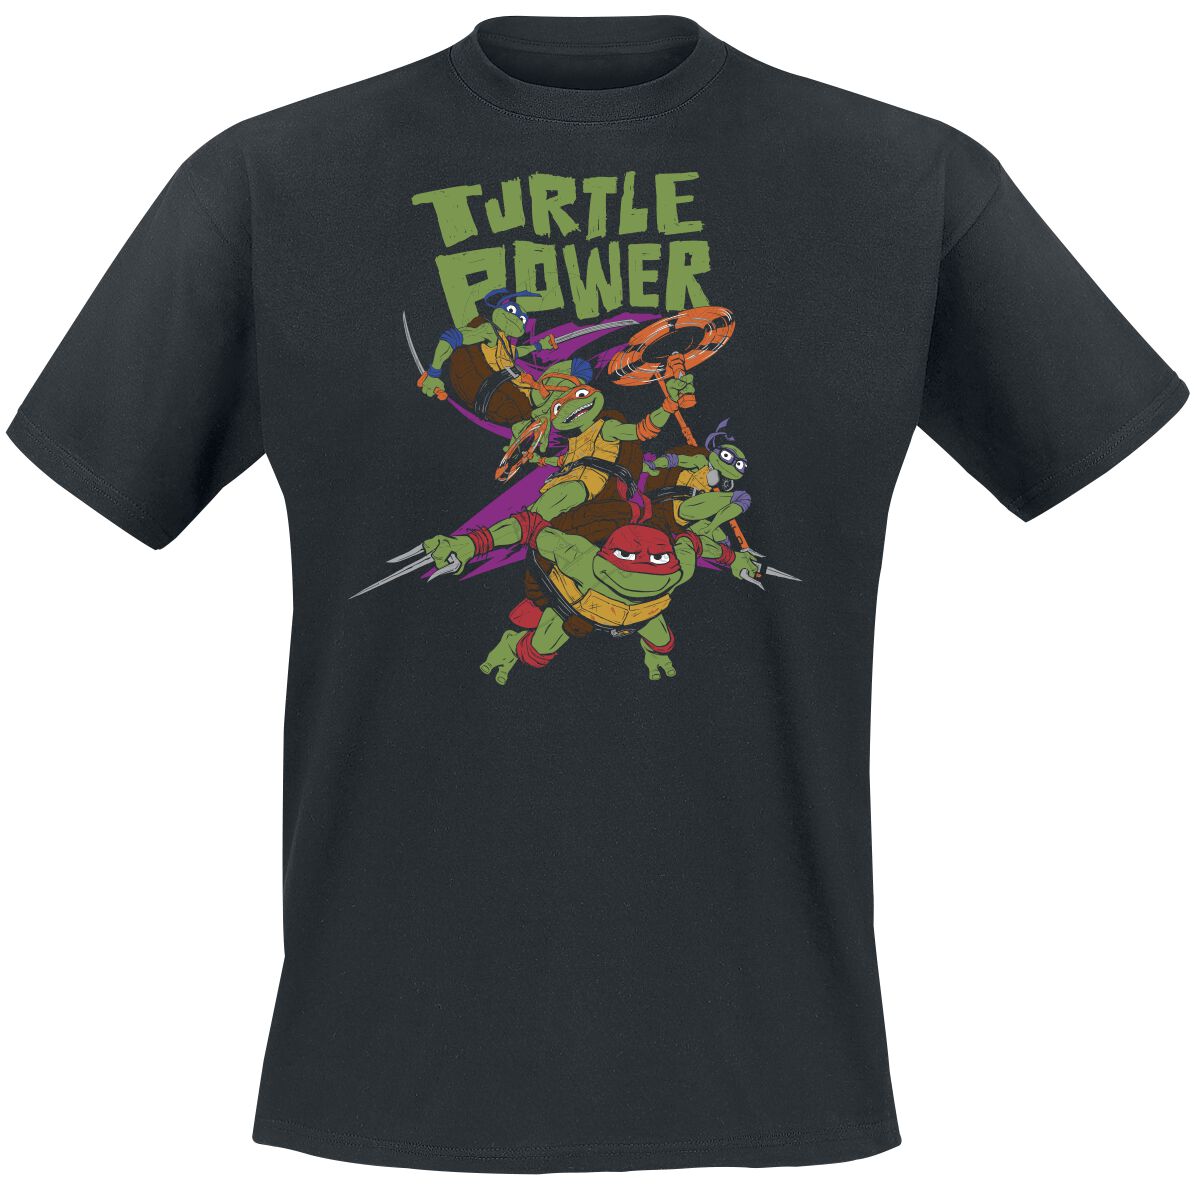 Teenage Mutant Ninja Turtles T-Shirt - Turtle Power - S bis L - für Männer - Größe M - schwarz  - EMP exklusives Merchandise!